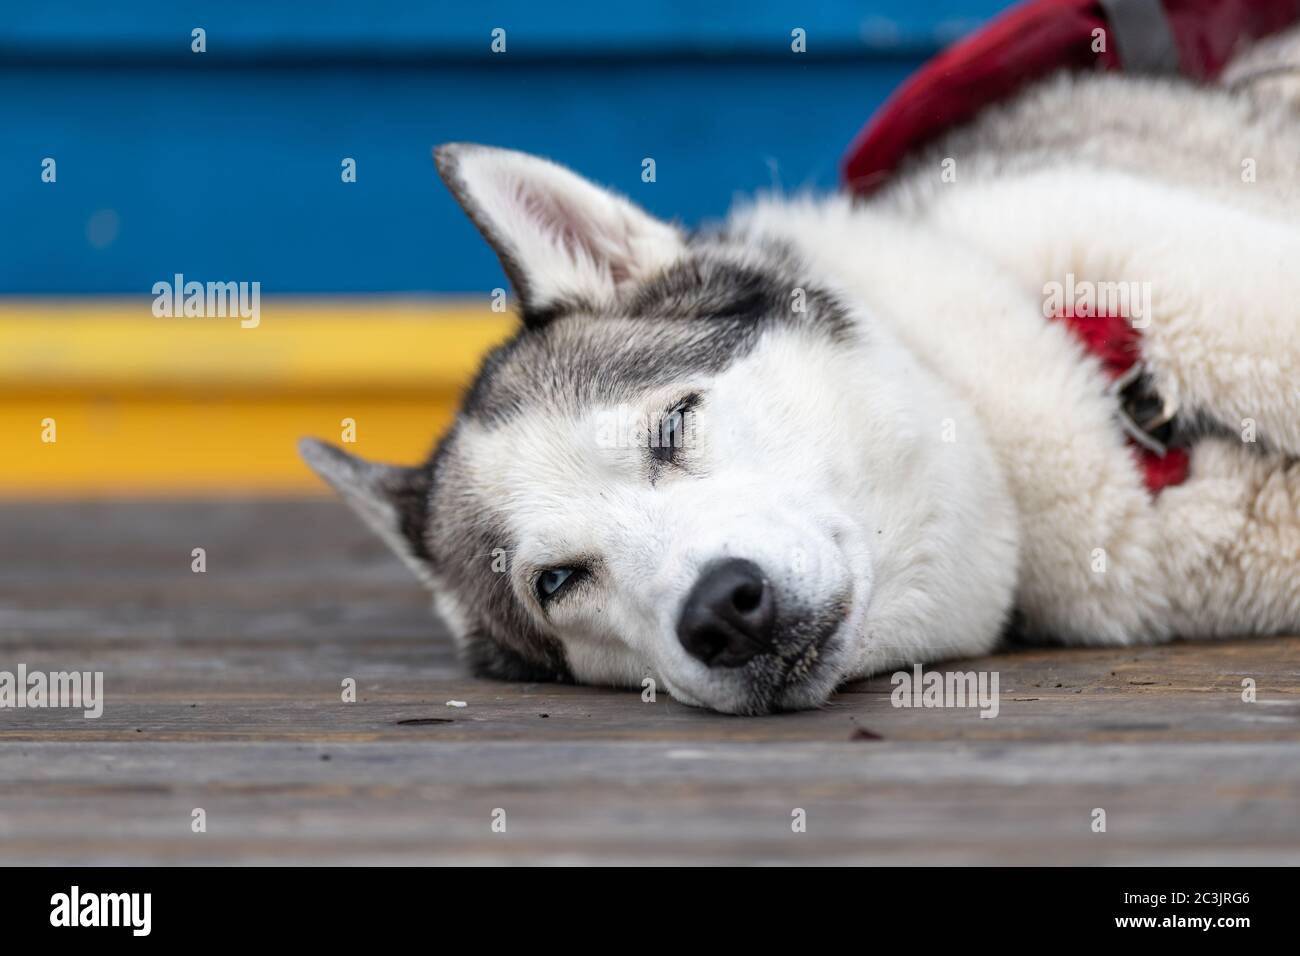 Ein schwarz-weißer Husky Hund, der seinen Kopf auf einem Holzdeck mit fast geschlossenen Augen legt. Das Tier hat einen Kragen um den Hals. Stockfoto